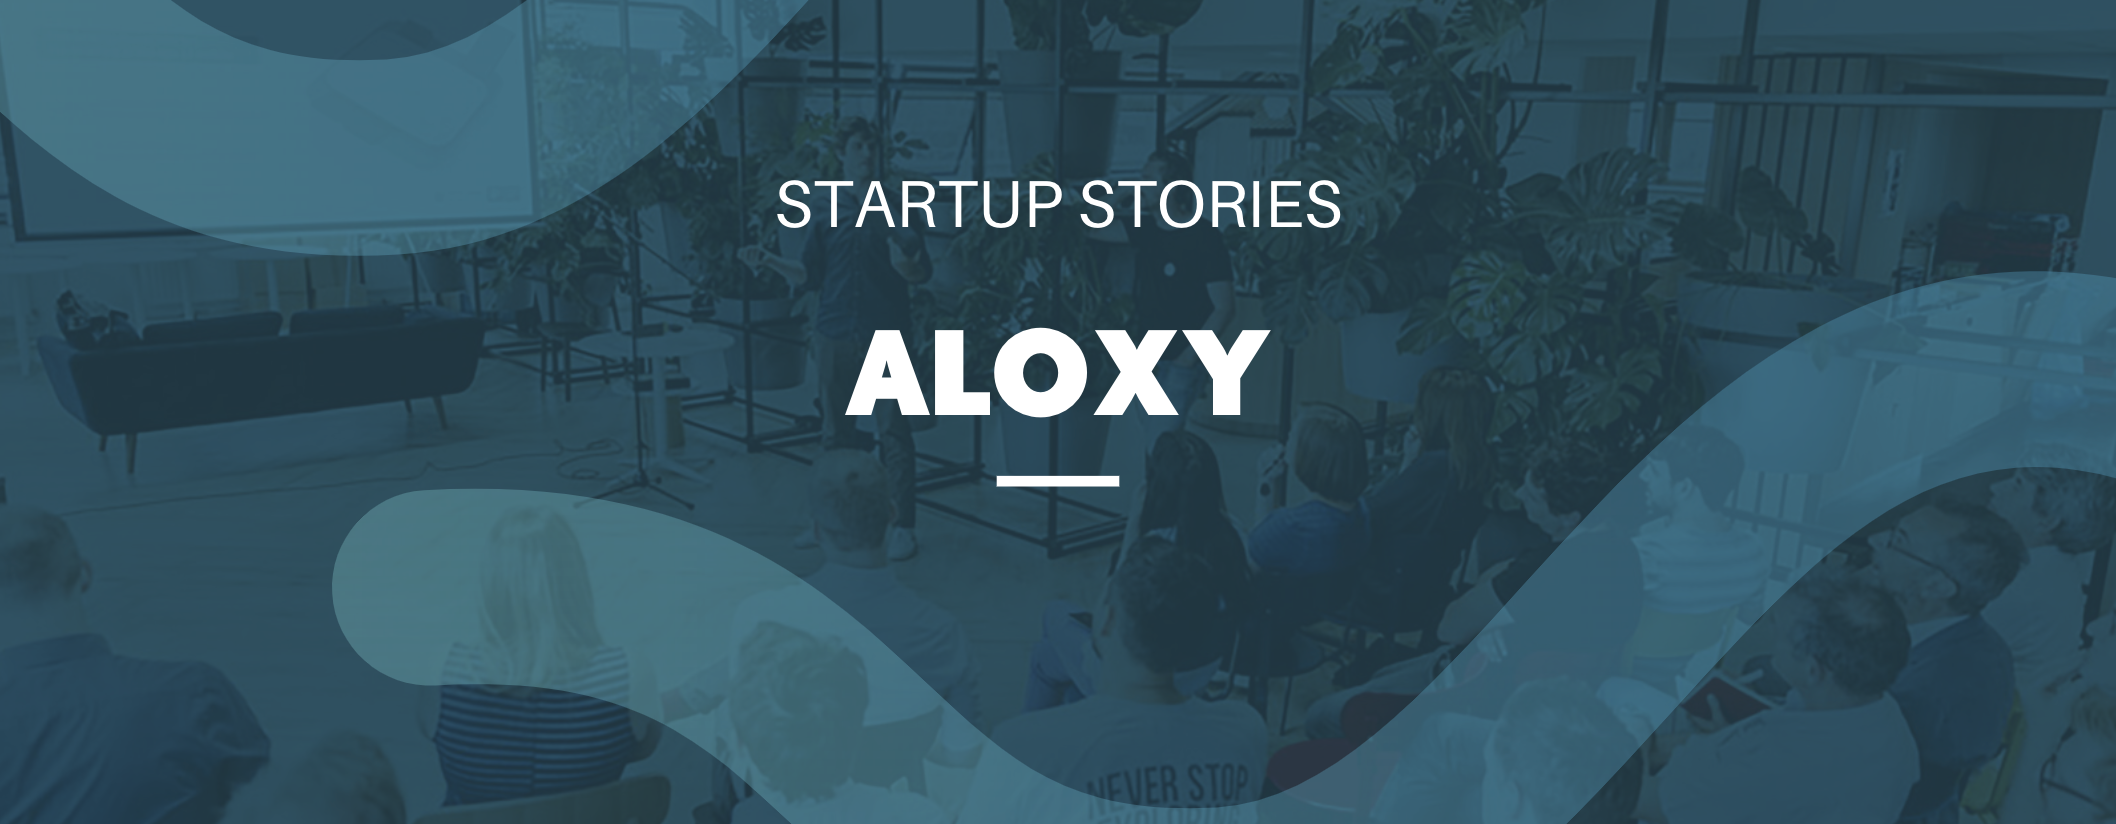 startupstoryaloxy